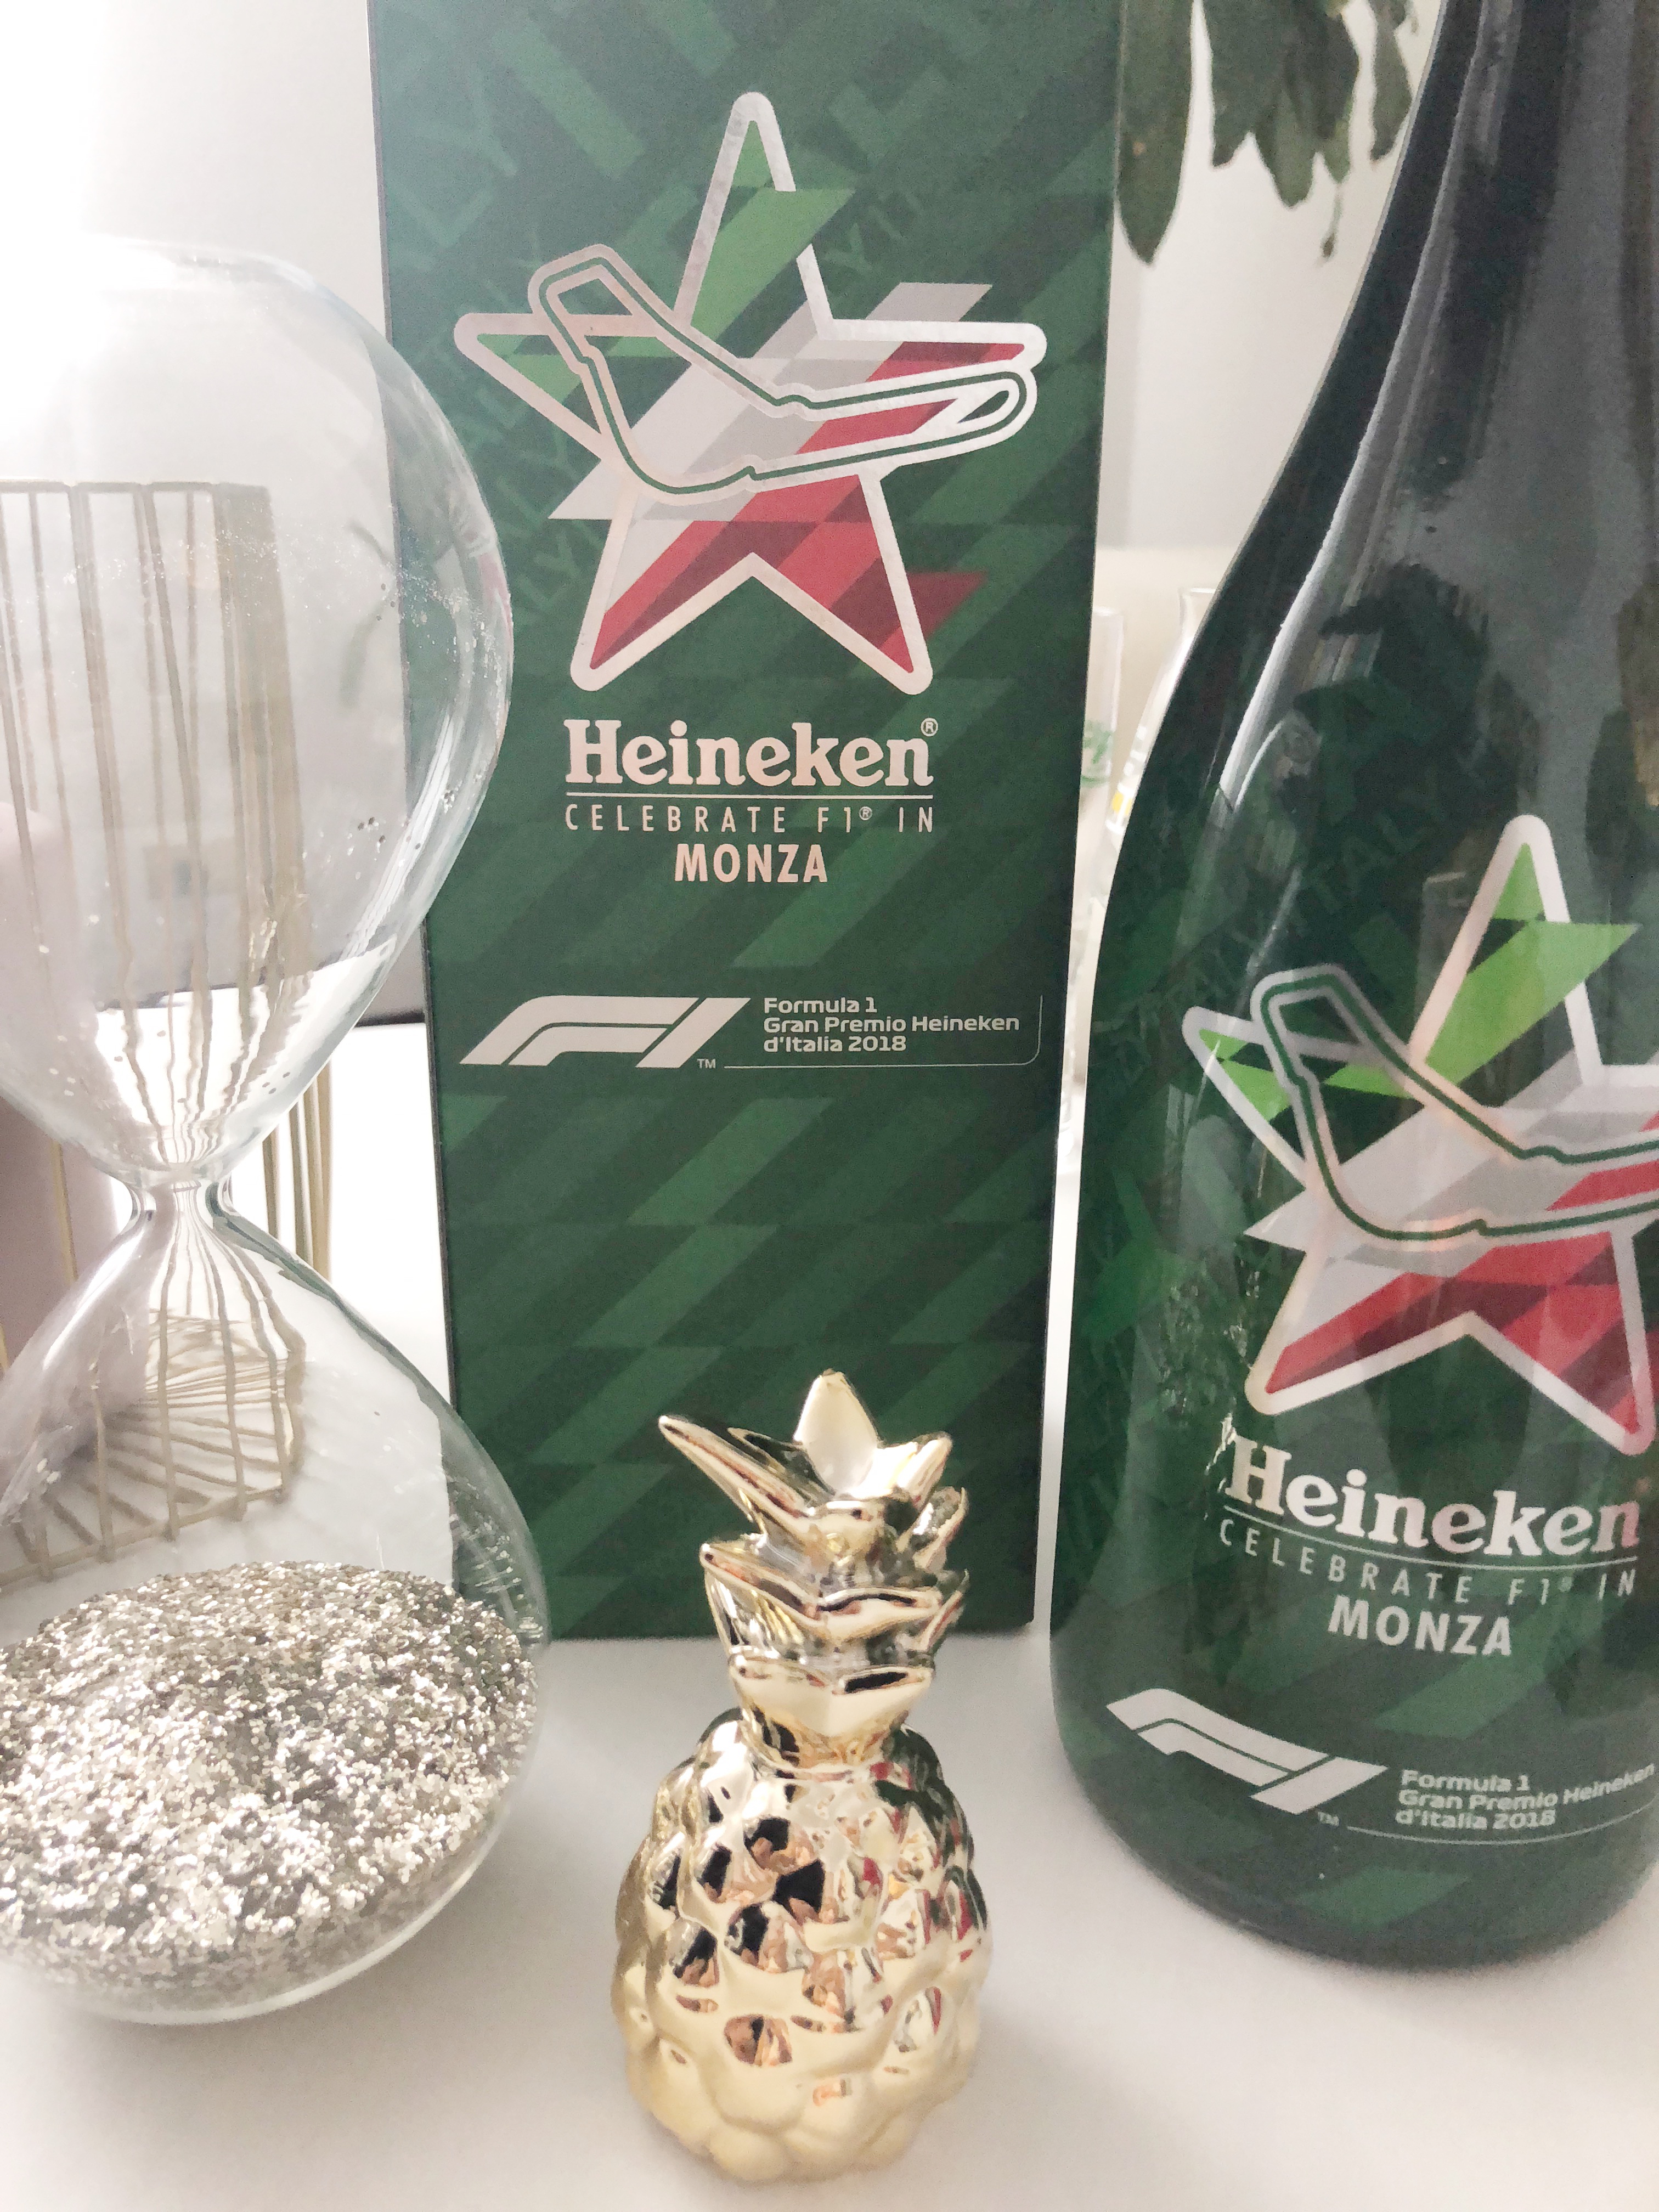 Gran Premio d'Italia 2018 in compagnia dello sponsor ufficiale Heineken